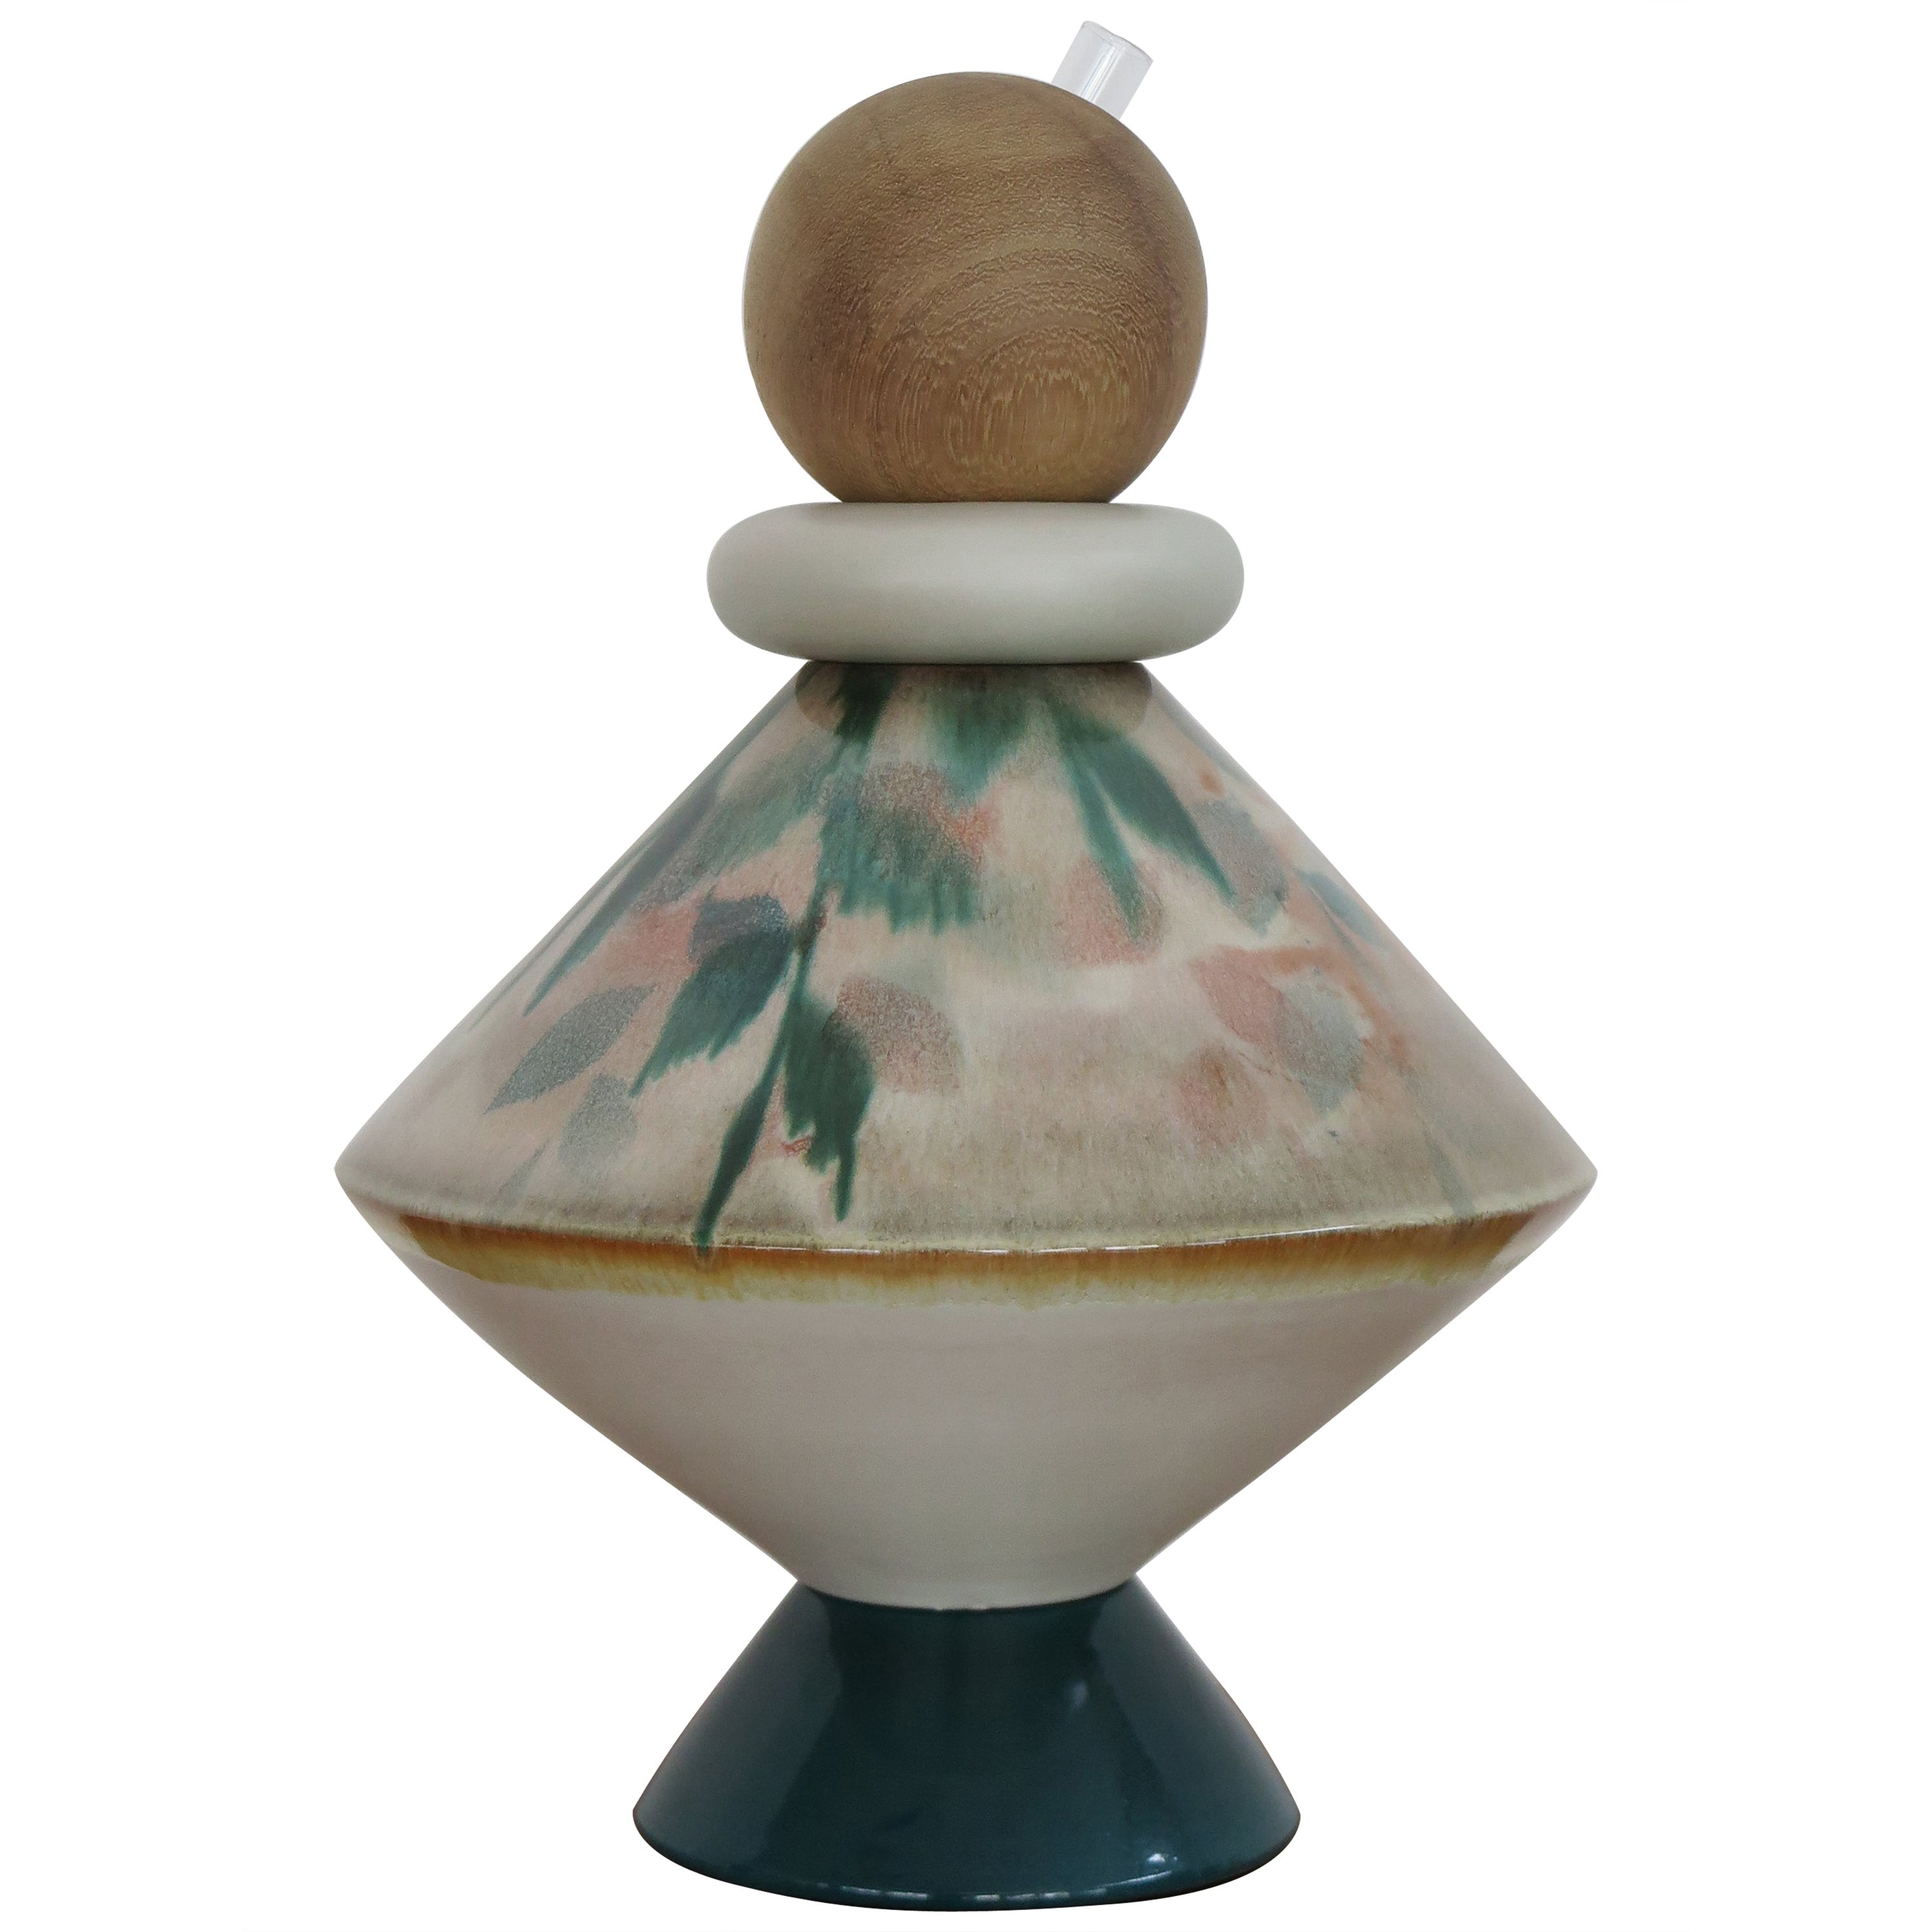 Capperidicasa Italian Ceramic Wood Contemporary Sculpture Flower Vase "iTotem" For Sale